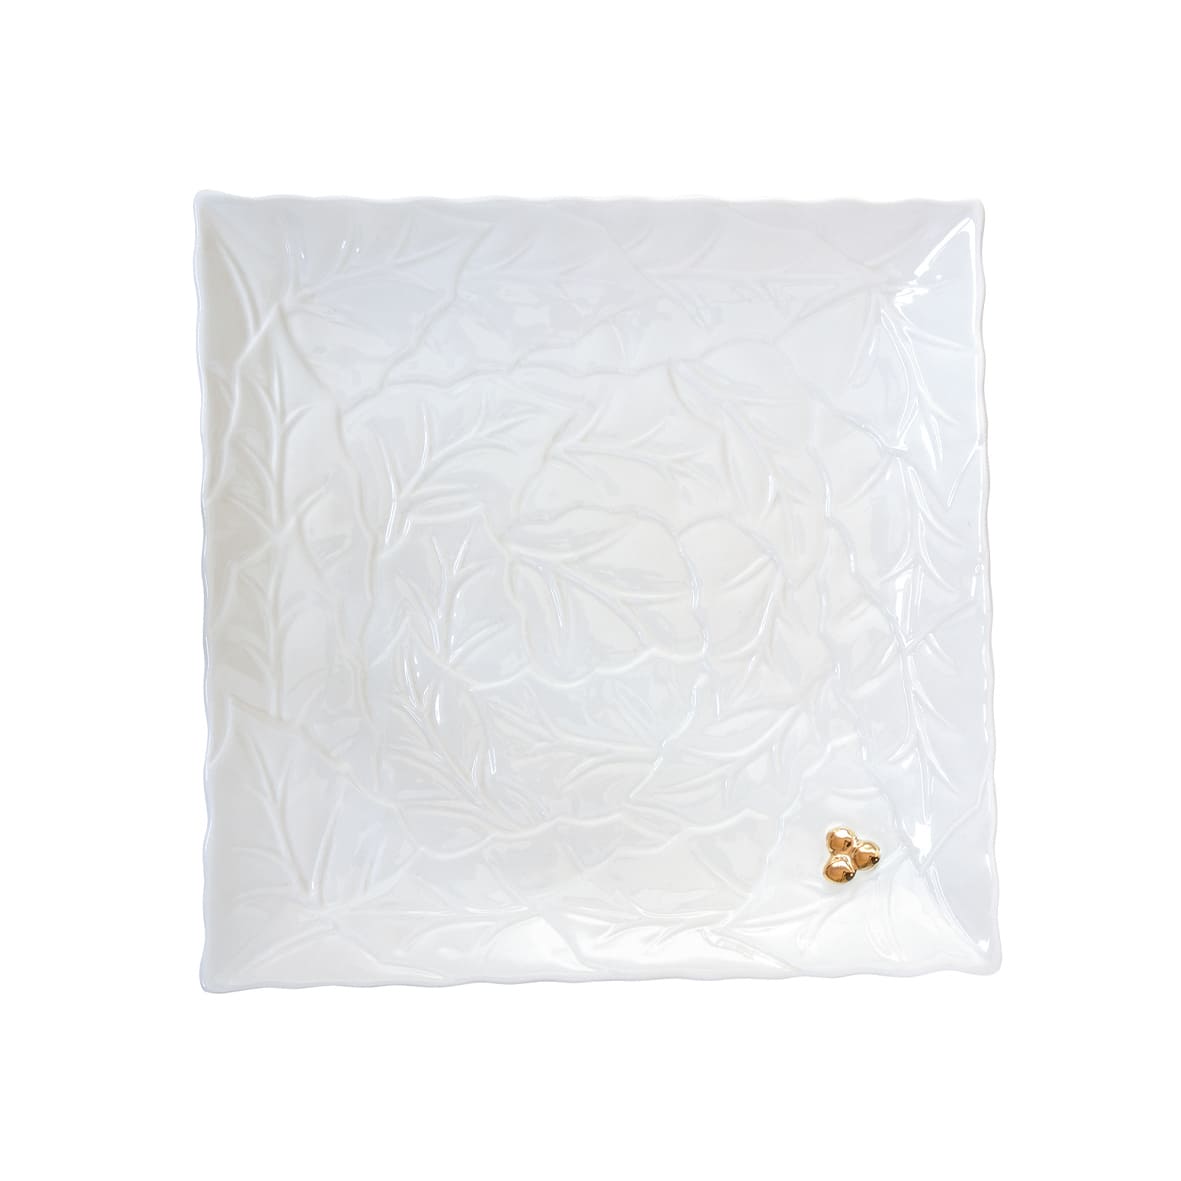 Porselen Servis Tabağı 30,0x30,0 cm - Beyaz